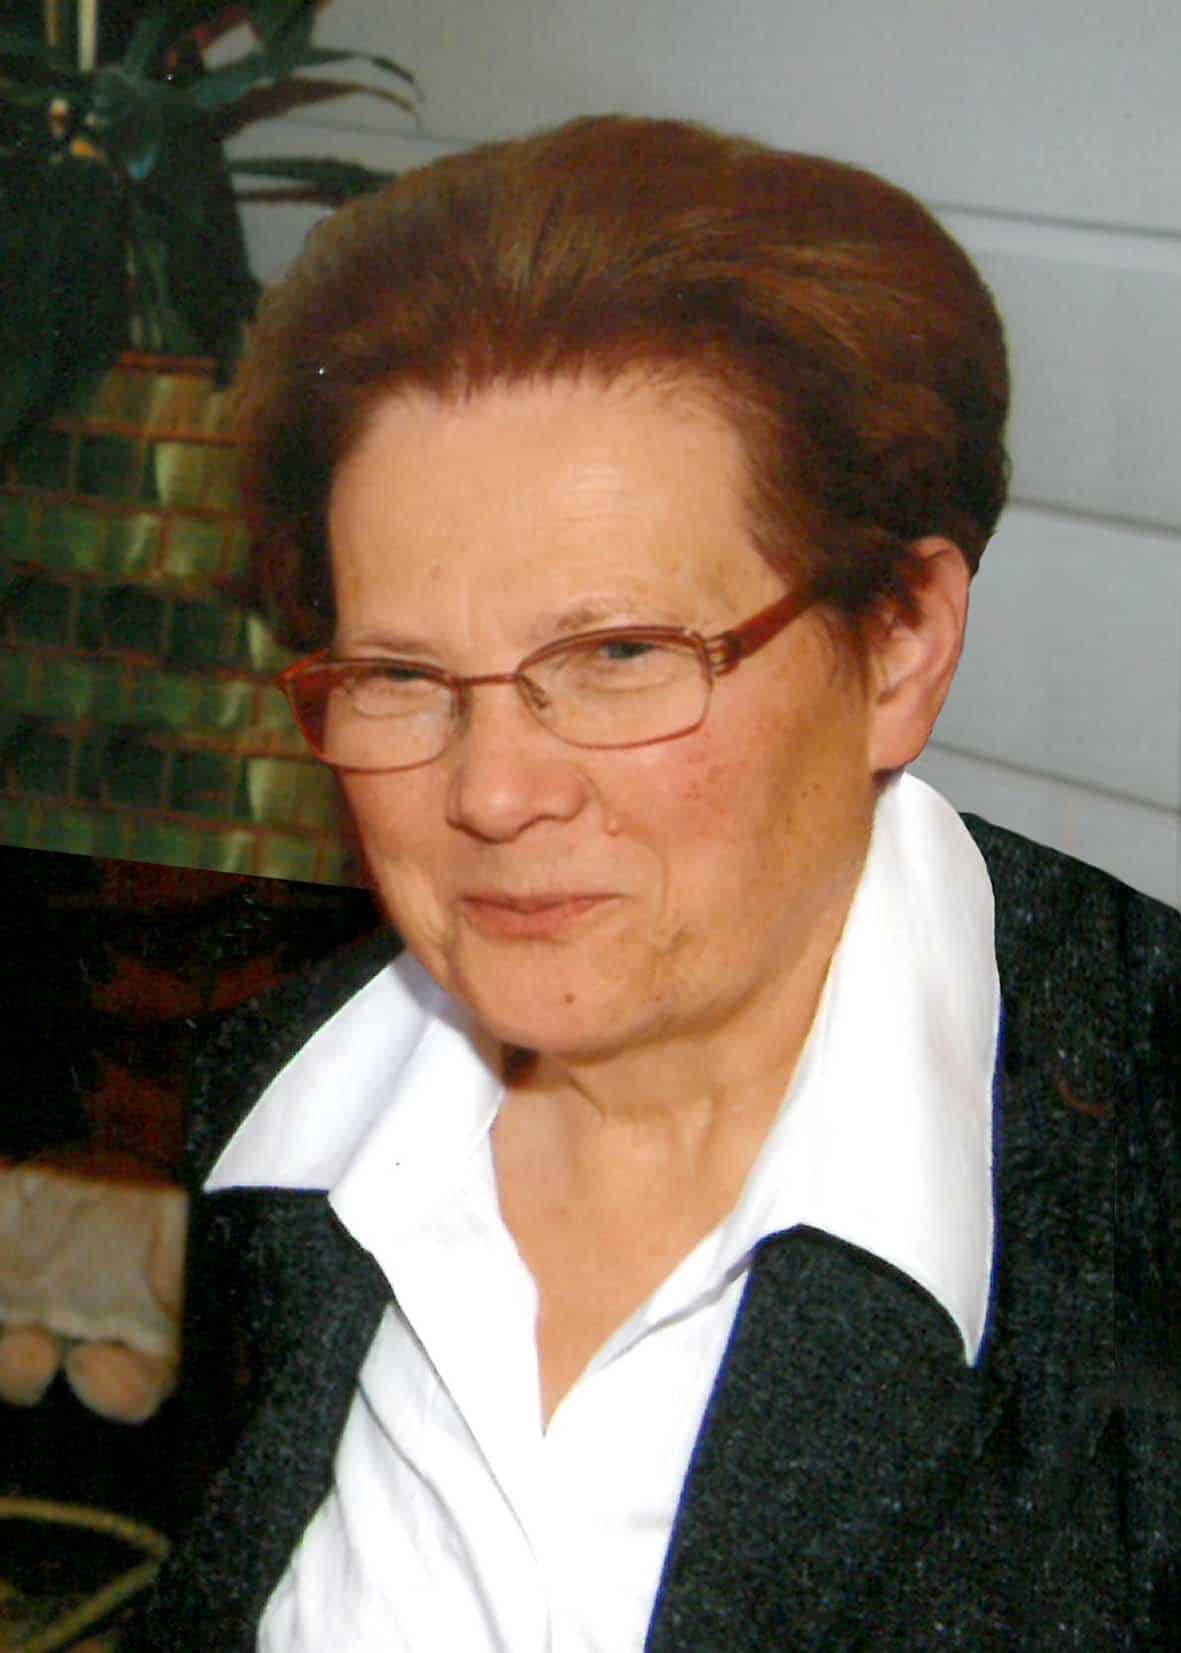 Theresia Schwarz (79)